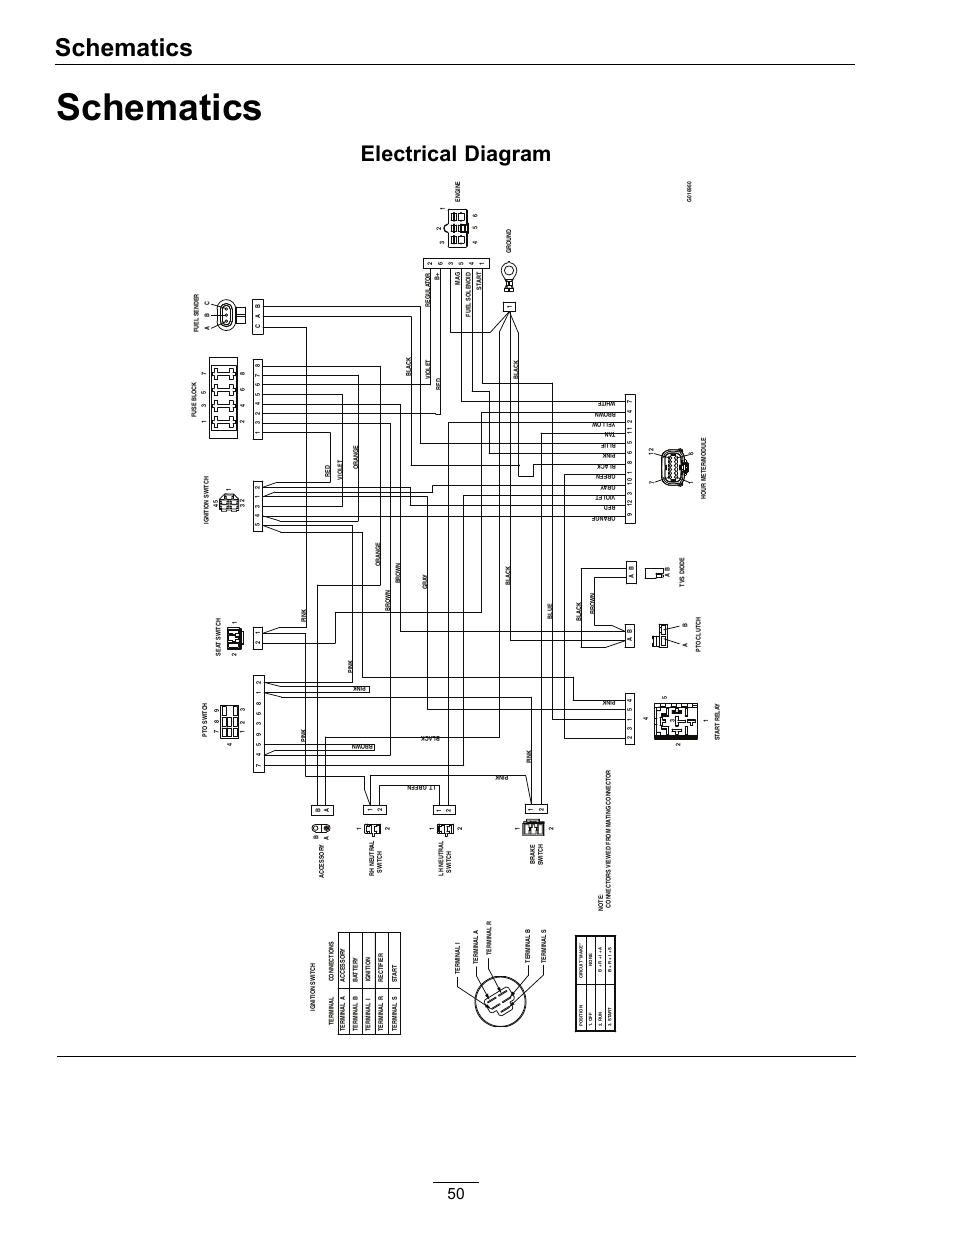 toro zero turn selonoid wiring diagram